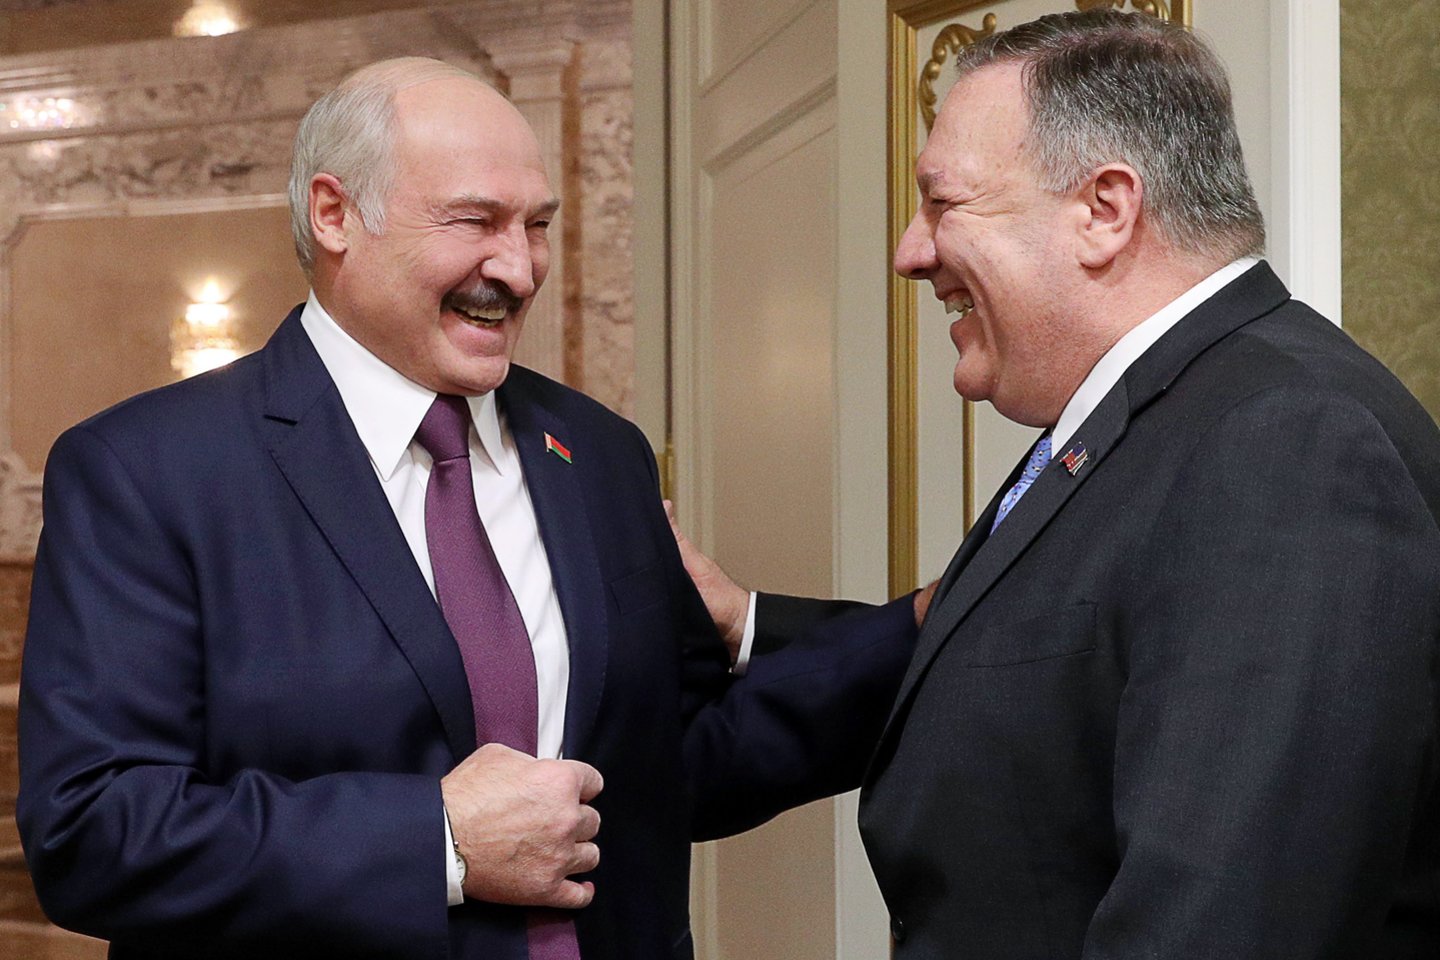 Baltarusijos prezidentas Aleksandras Lukašenka (kairėje) gyrė praėjusio savaitgalio susitikimą su JAV valstybės sekretoriumi Mike'u Pompeo (dešinėje) ir sakė, kad tai yra šiltesnių santykių su Vašingtonu ženklas.  <br> TASS/Scanpix nuotr.